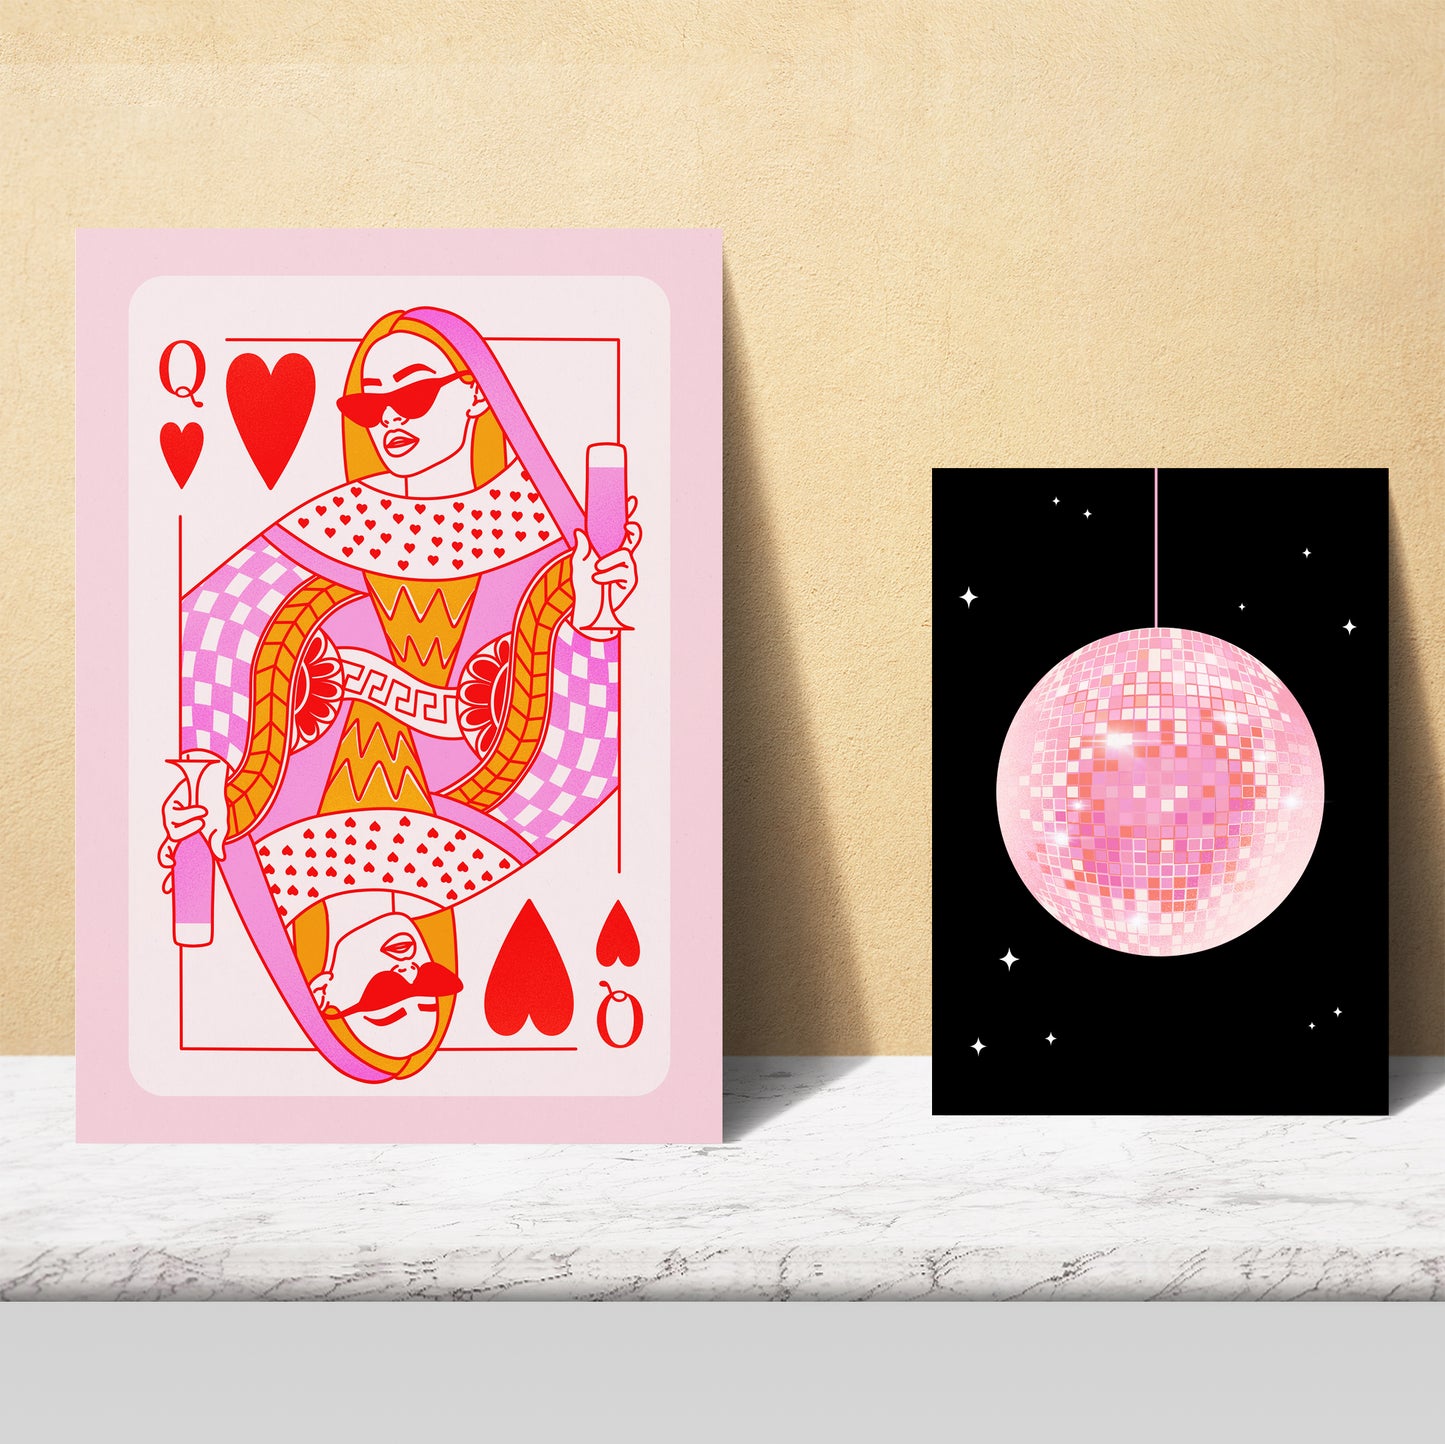 Illustraciones de arte moderno femenino tonos rosas